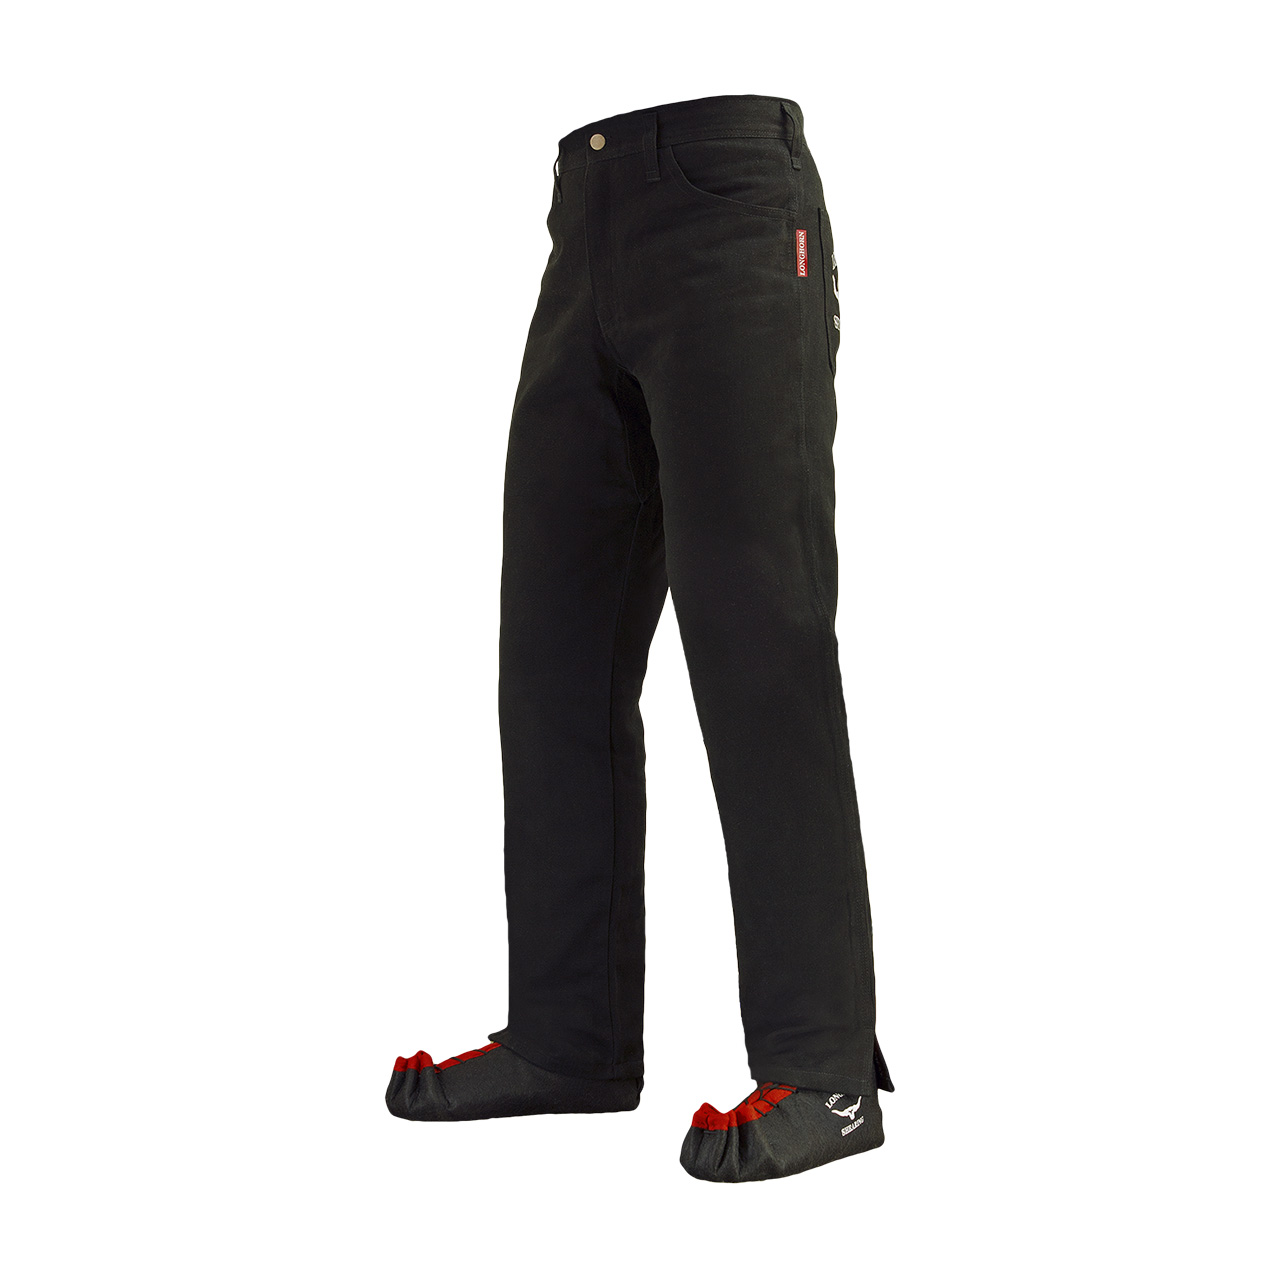 Longhorn™ kalhoty pro střihače ovcí s 2 předními kapsami velikost Short 32/28 4S